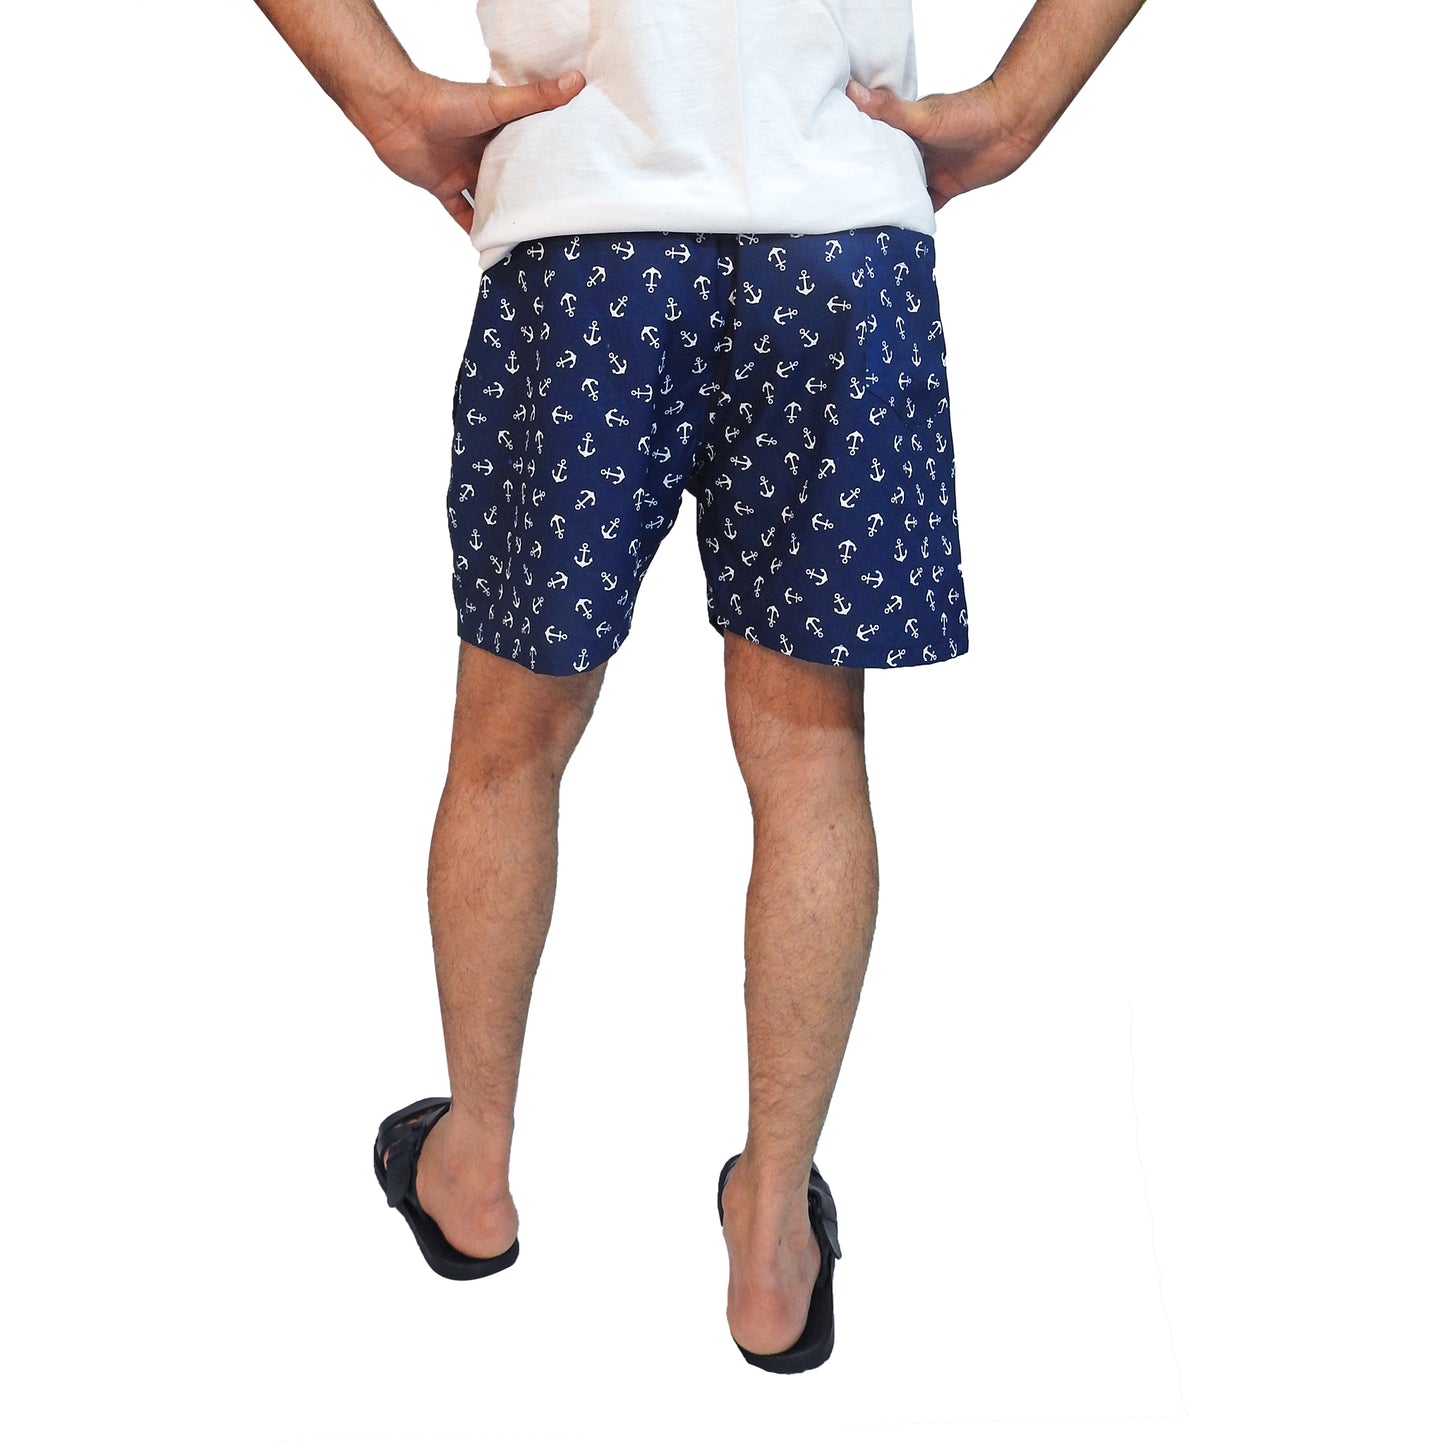 long-lounge-shorts-for-men-online